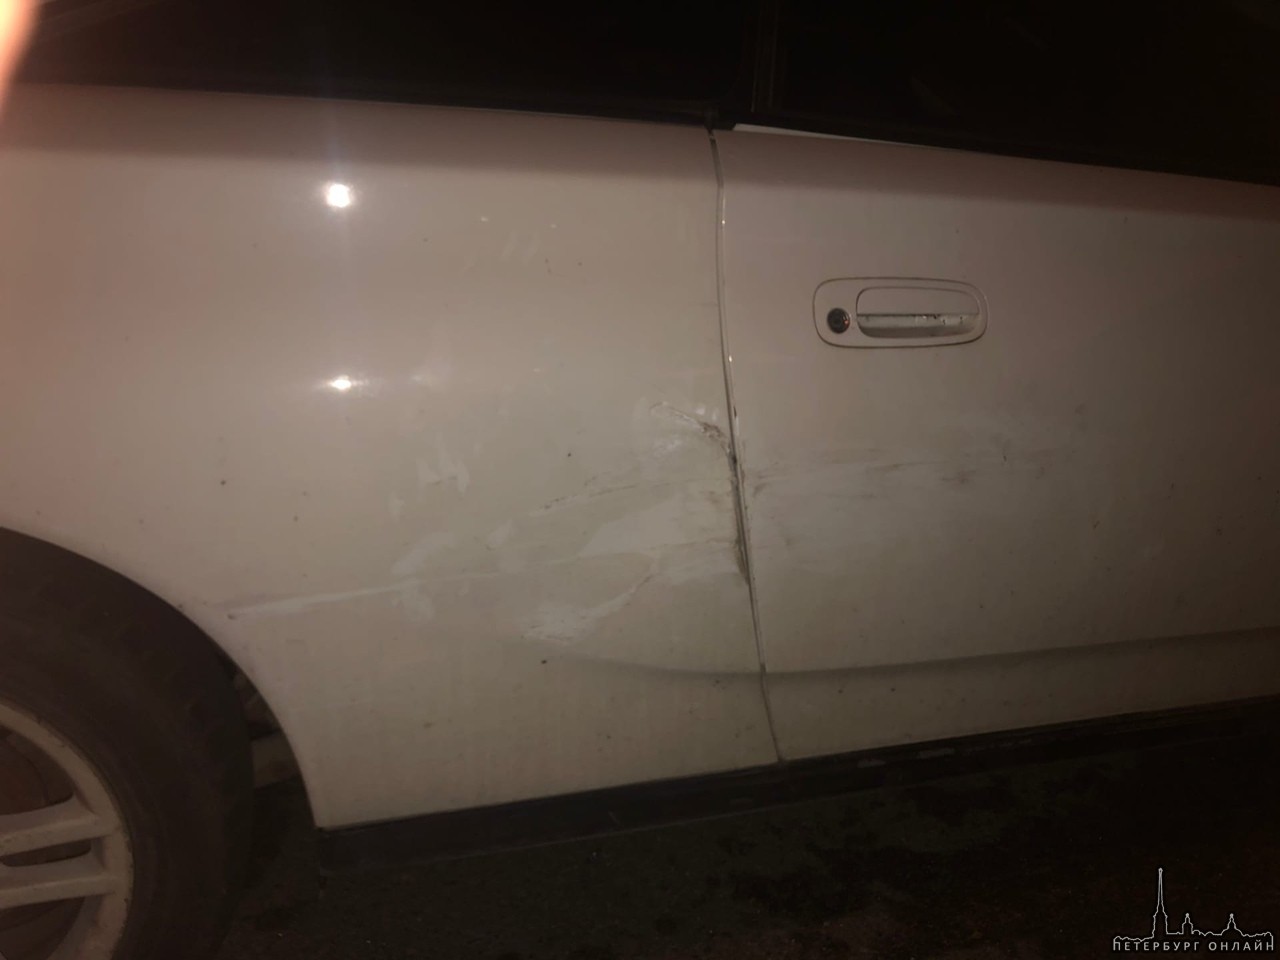 На Кропоткина 30 октября приблизительно в 20:27 человек на сером Поло врезался в припаркованную Тойо...